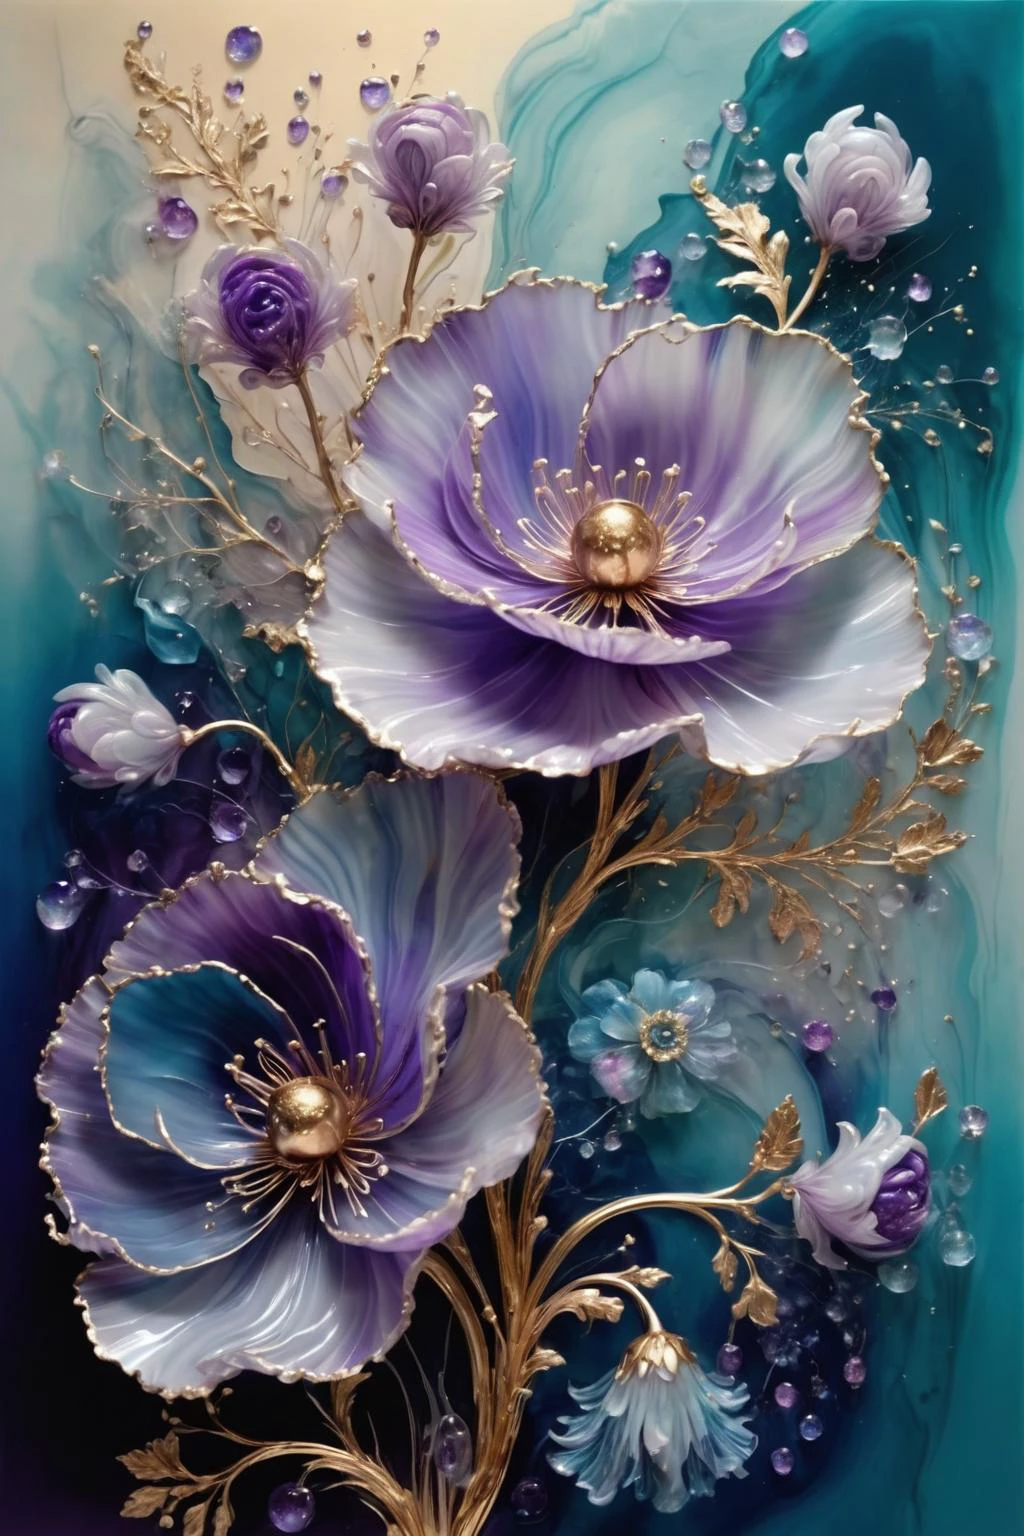 Un ramo de flores en flor,los pétalos muestran diferentes tonos de azul y violeta,el centro está adornado con textura dorada,espumoso,elegante y unico,balanceo suave,misterioso y encantador,arte realista y abstracto,detalles,muy realista,hermosa y vital,onírico y surrealista,pinceladas delicadas y colores ricos,Belleza y misterio,belleza inimaginable,Adornado e intrincado,transparente,translúcido,material de ágata,material de jade,por Anne Bachelier,